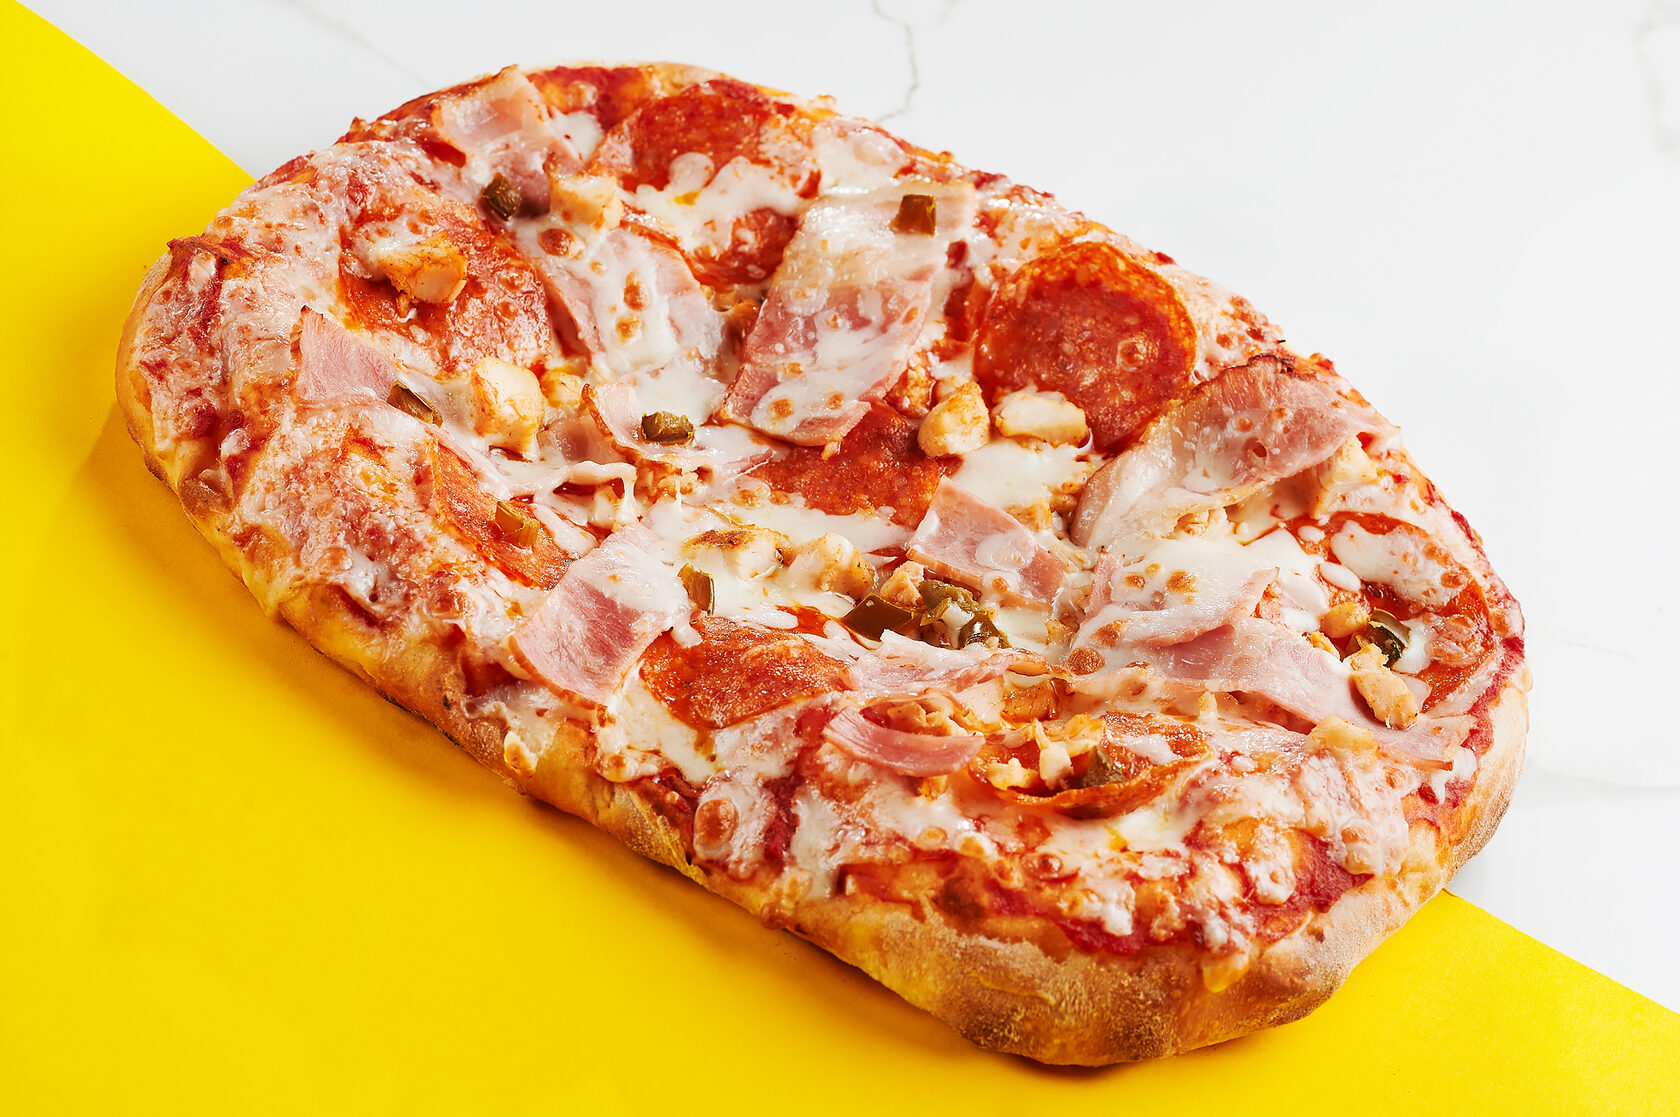 сколько калорий в одном куске пиццы пепперони из додо фото 94